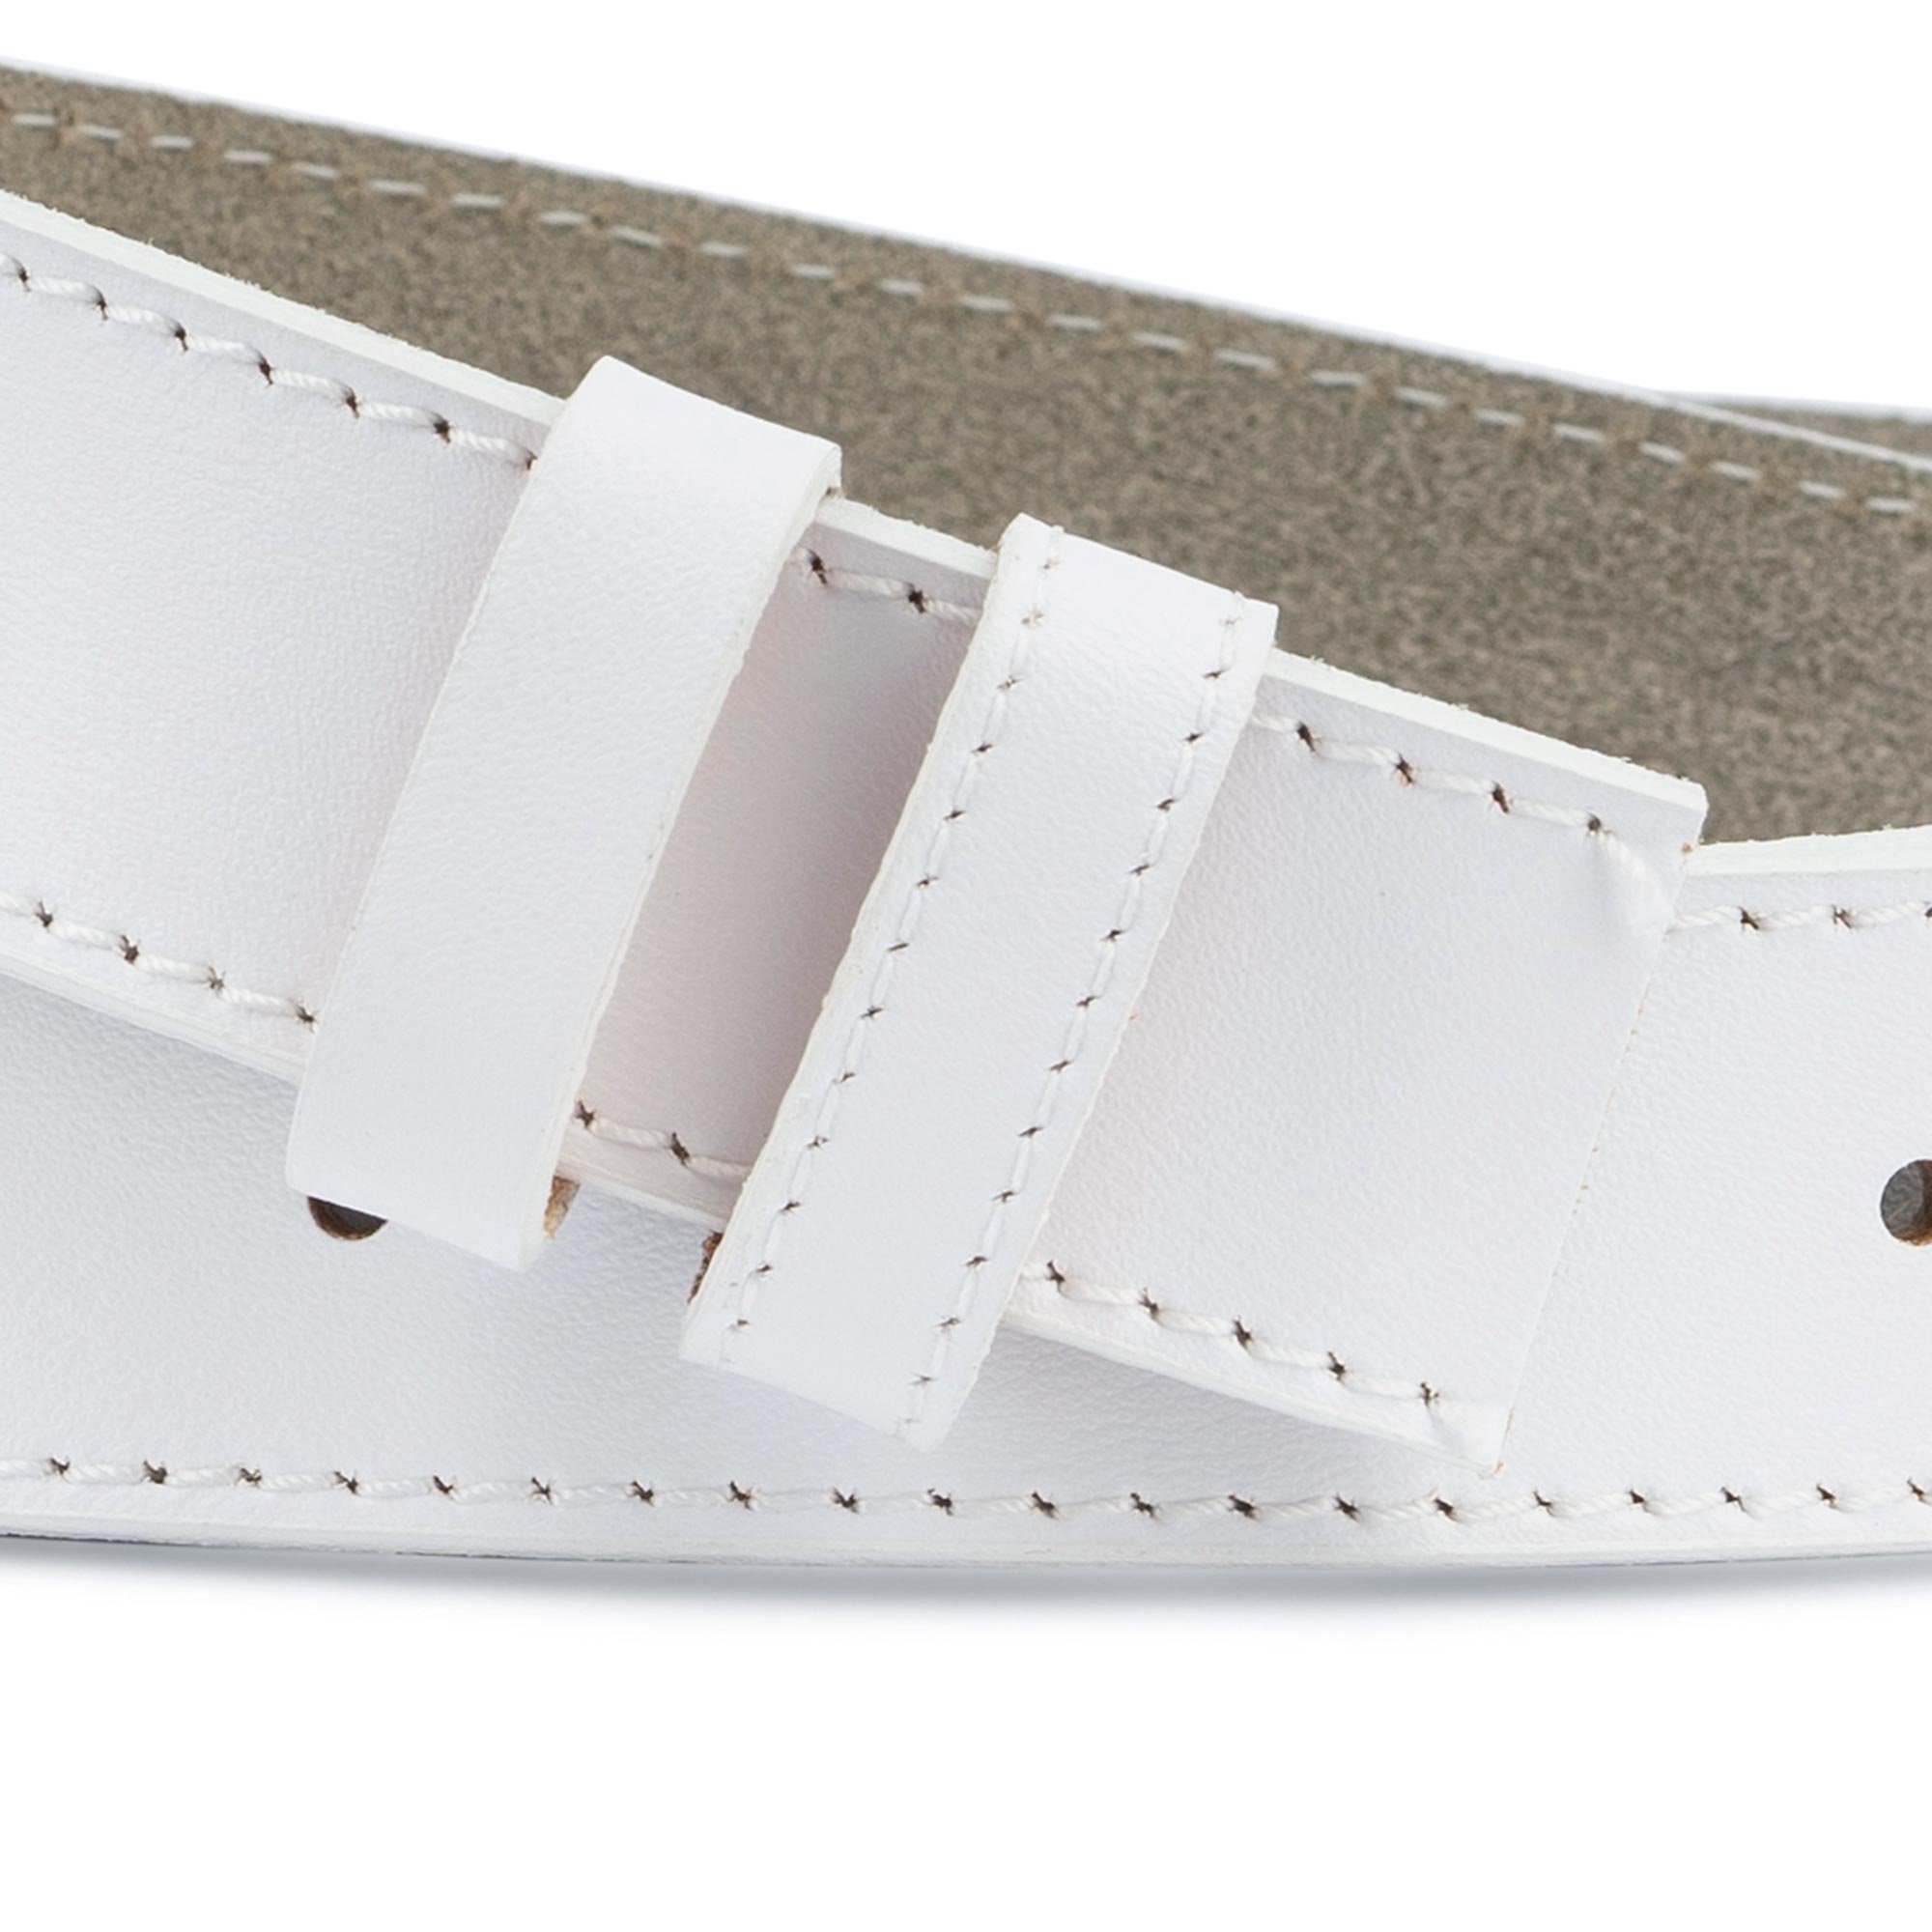  Cinturón de cuero Cinturón de cuero con hebilla de aleación  automática blanca Cinturón masculino de piel de vaca Cinturones de golf  para hombres y hombres (color : A, tamaño: 51.2 in) 